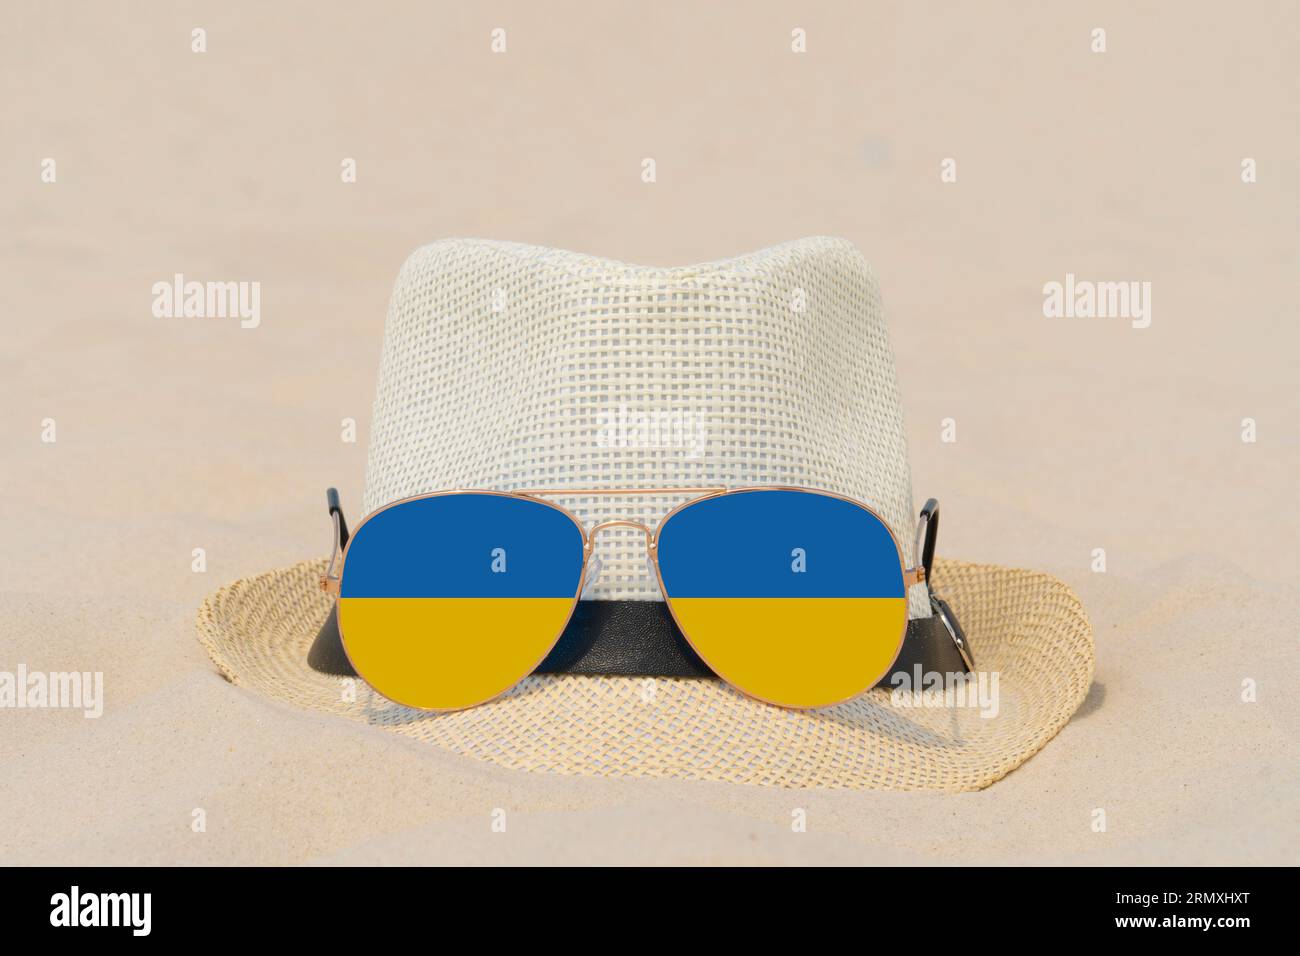 Sonnenbrillen mit Gläsern in Form einer Flagge der Ukraine und einem Hut liegen auf Sand. Konzept von Sommerferien und Reisen in der Ukraine. Sommerruhe Stockfoto